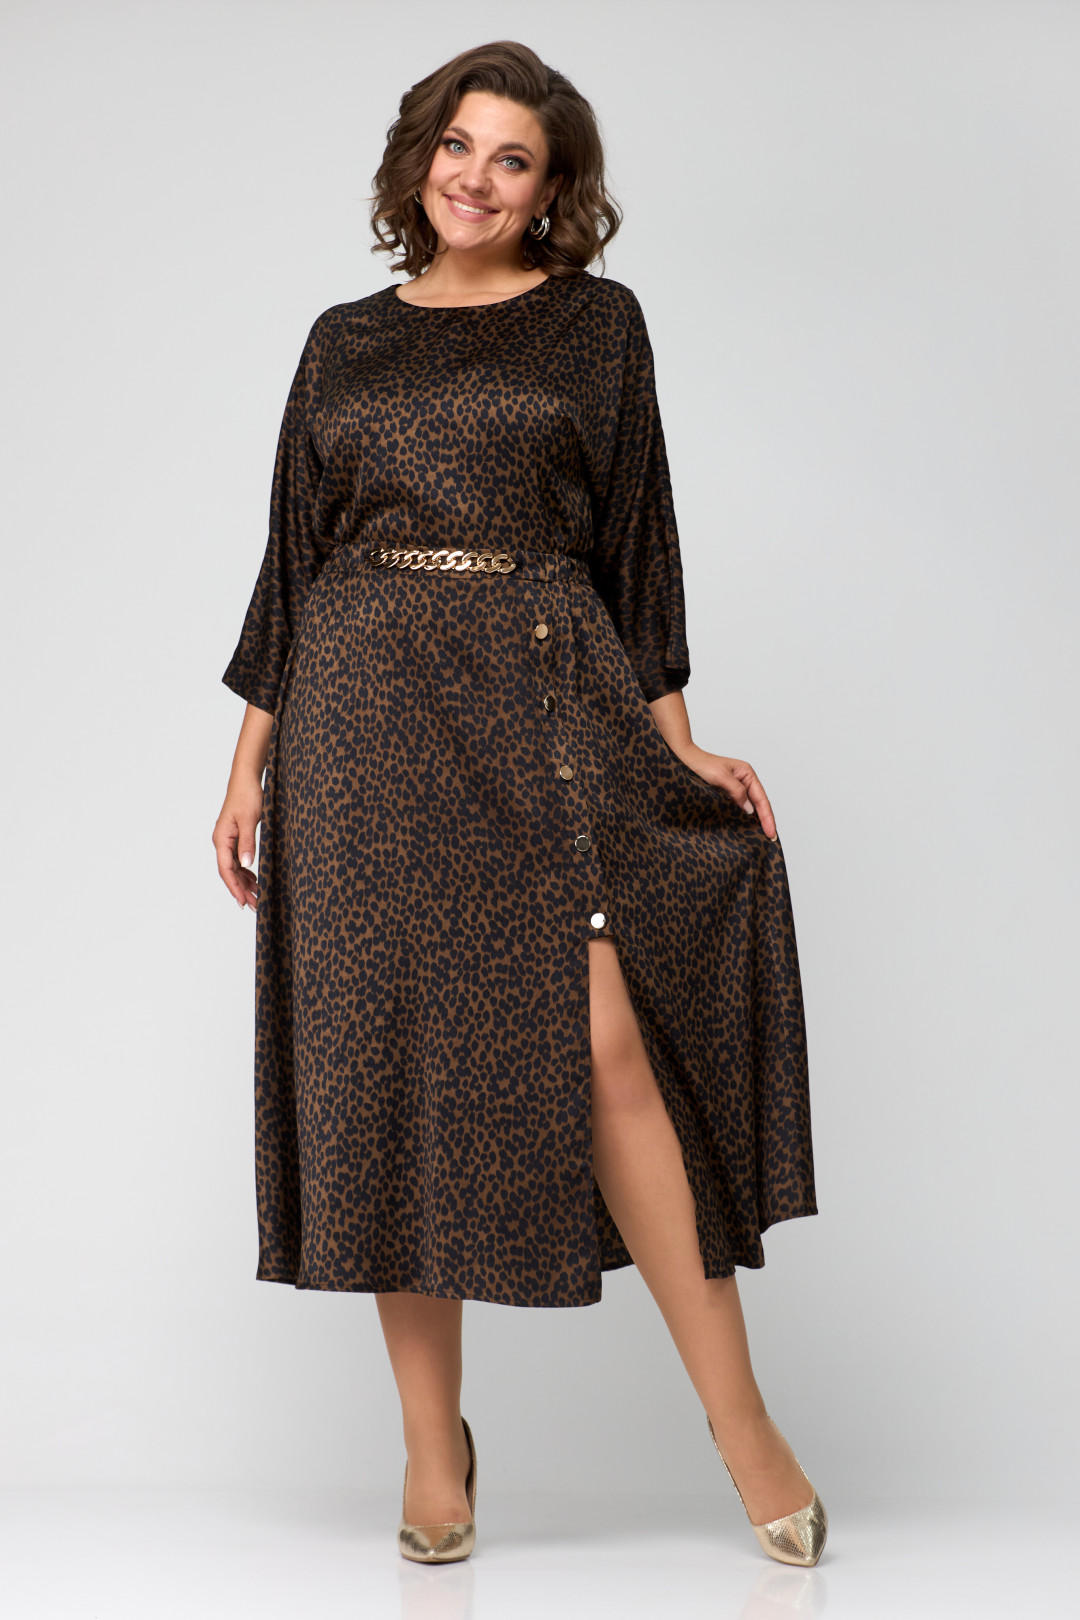 Платье Данаида 2131 леопард